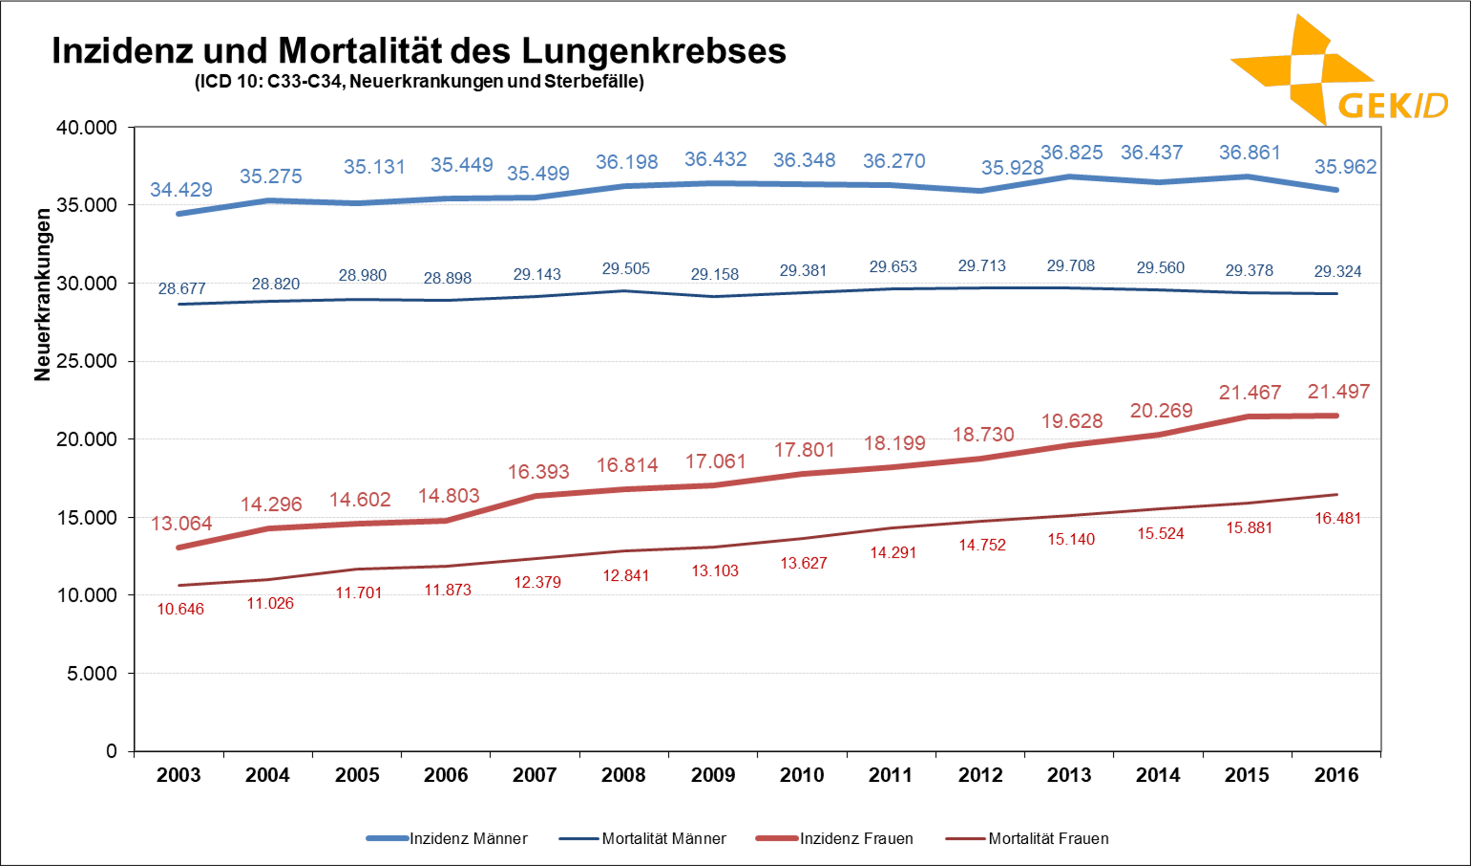 Geschätzte Inzidenz des Lungenkrebses (ICD 10: C33-C34) in Deutschland – Fallzahlen 